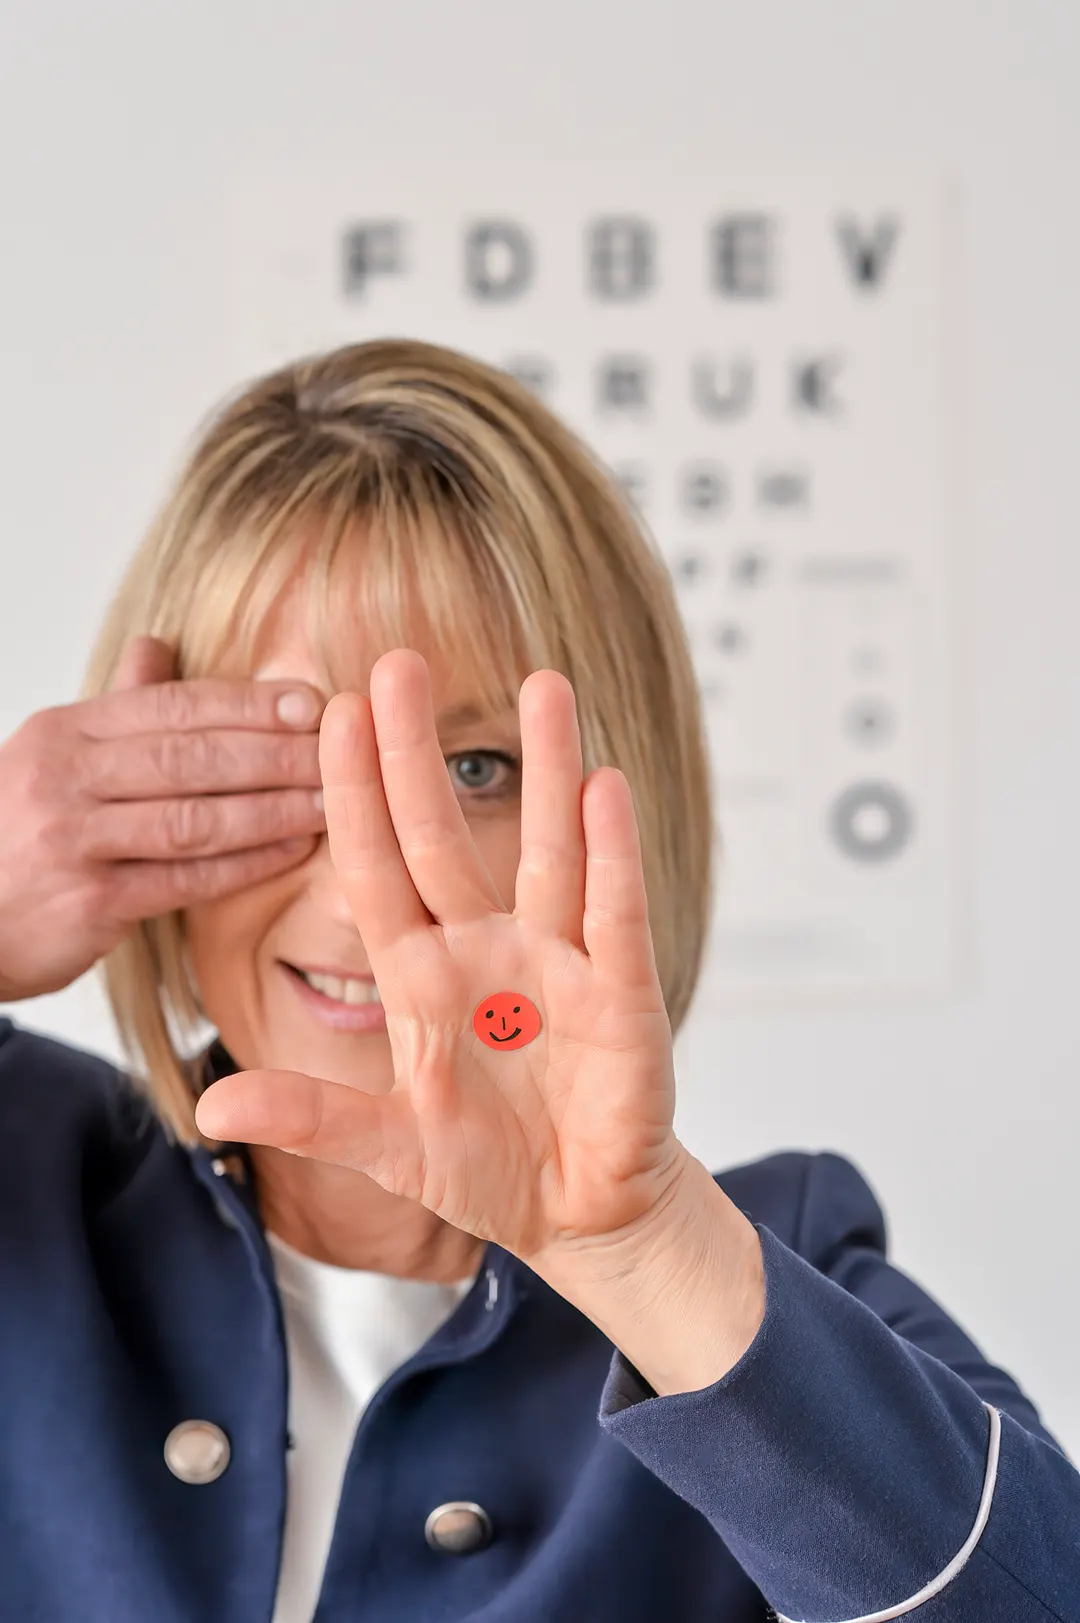 Gesundheit am Arbeitsplatz - Training für die Augen mit Blicksprung